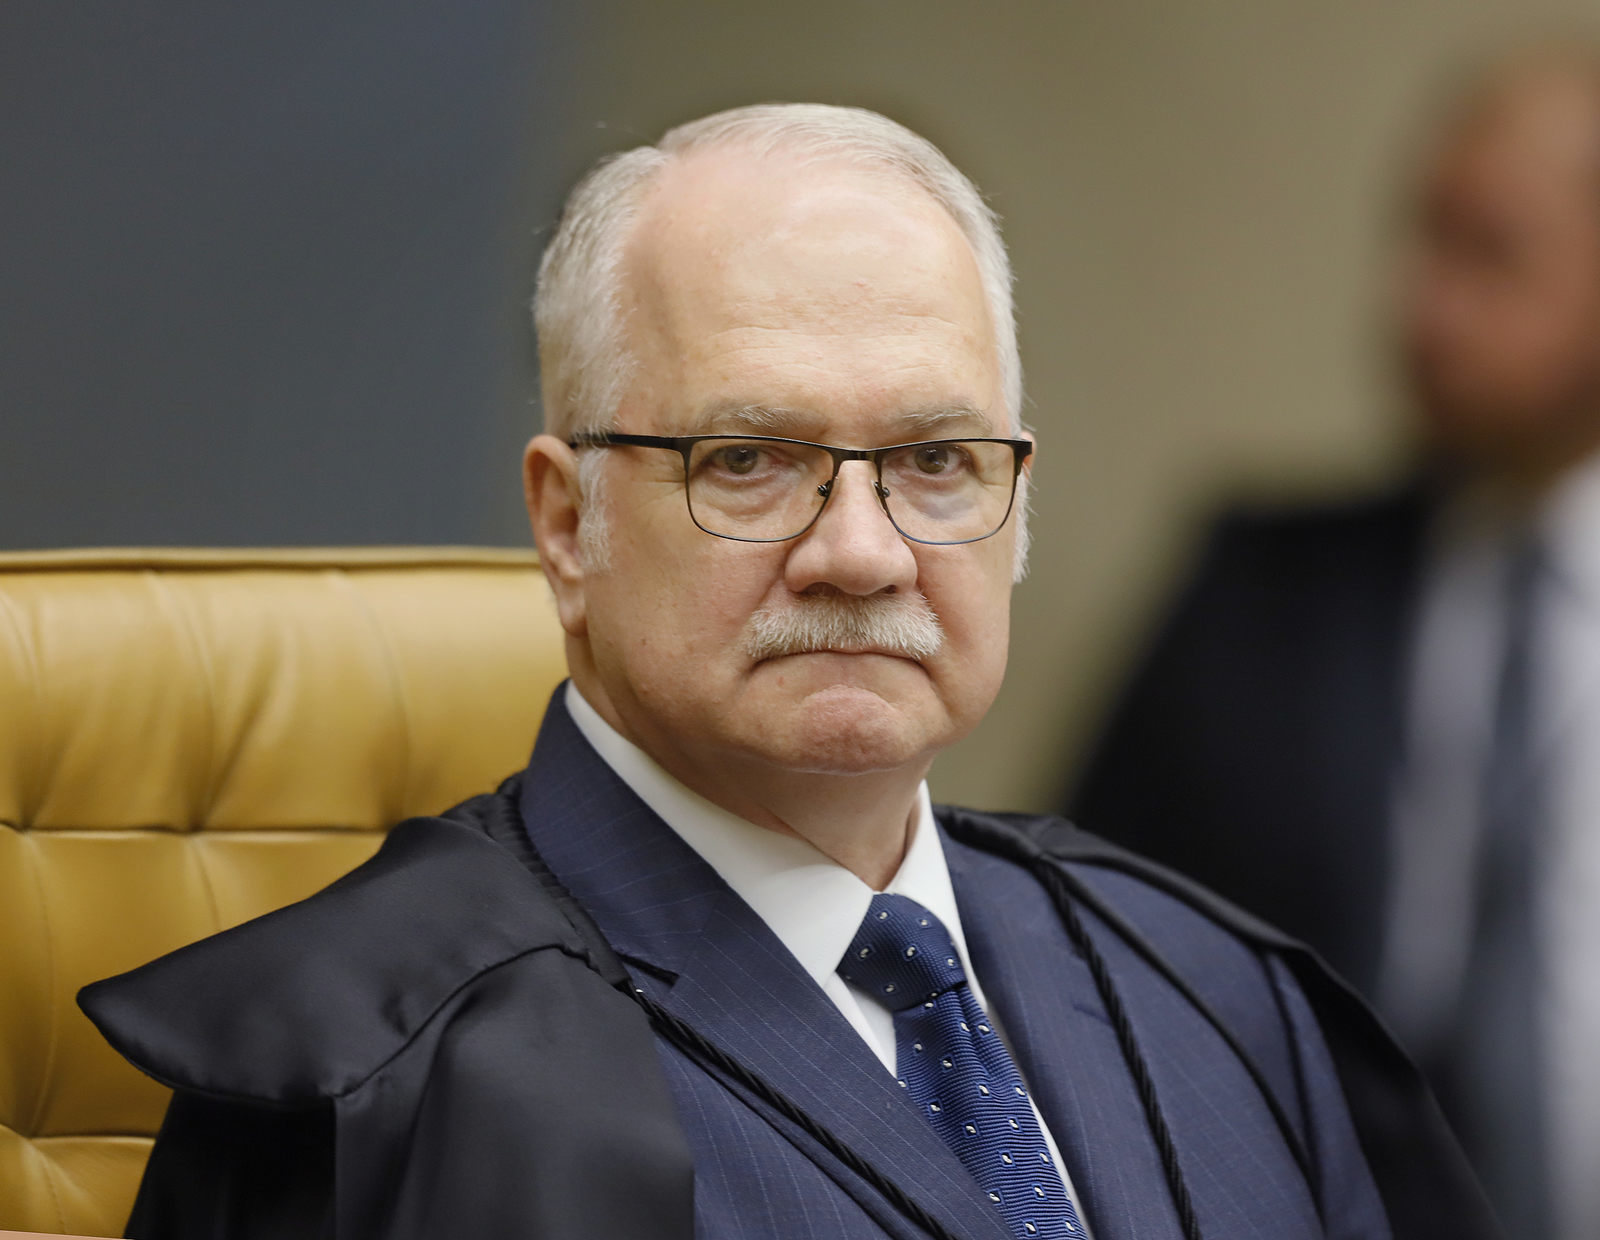 Fachin assume lugar de Celso de Mello nas críticas a Bolsonaro e aos militares